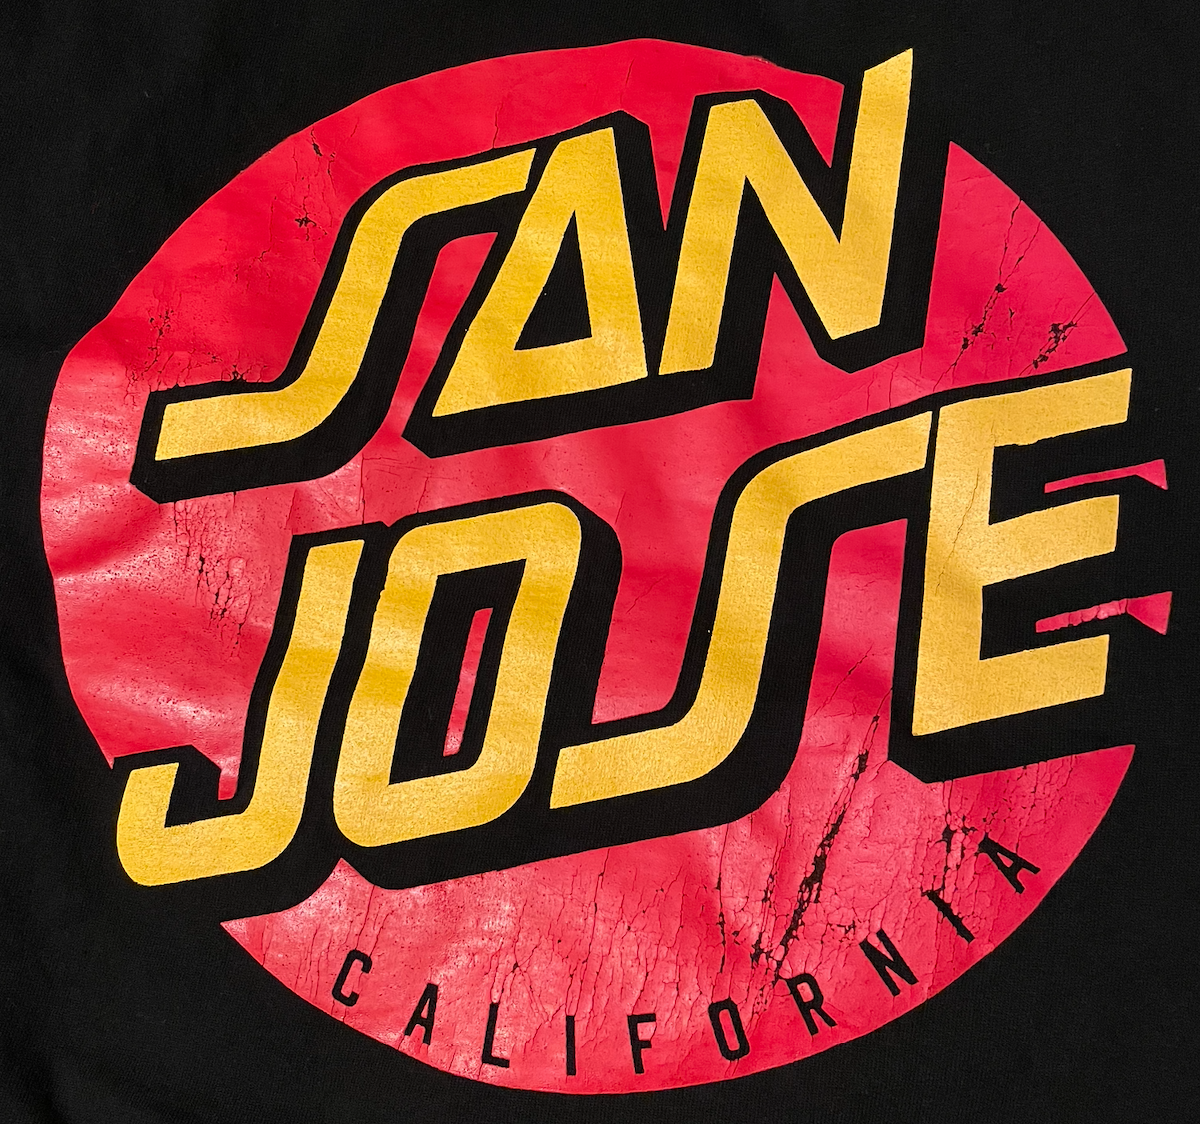 San Jose Gear at Jeans Palace